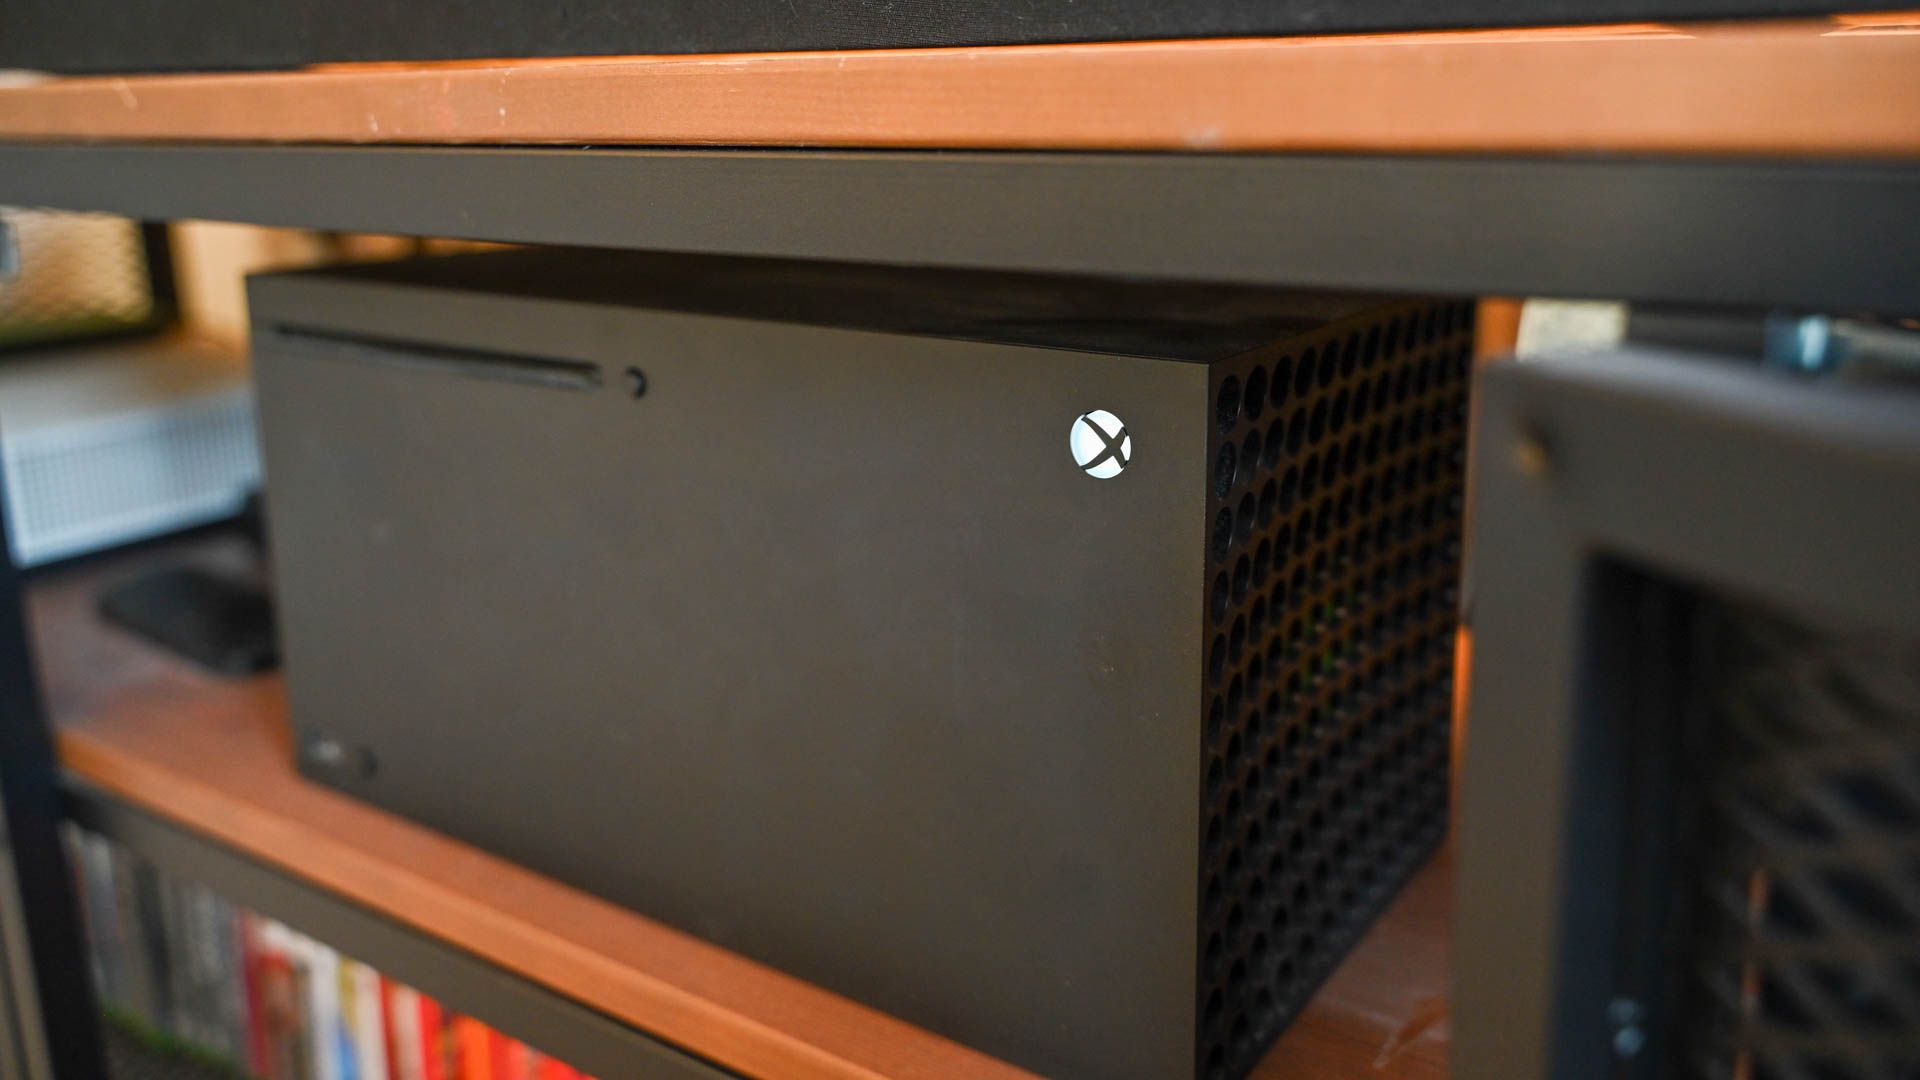 Xbox Series X on shelf